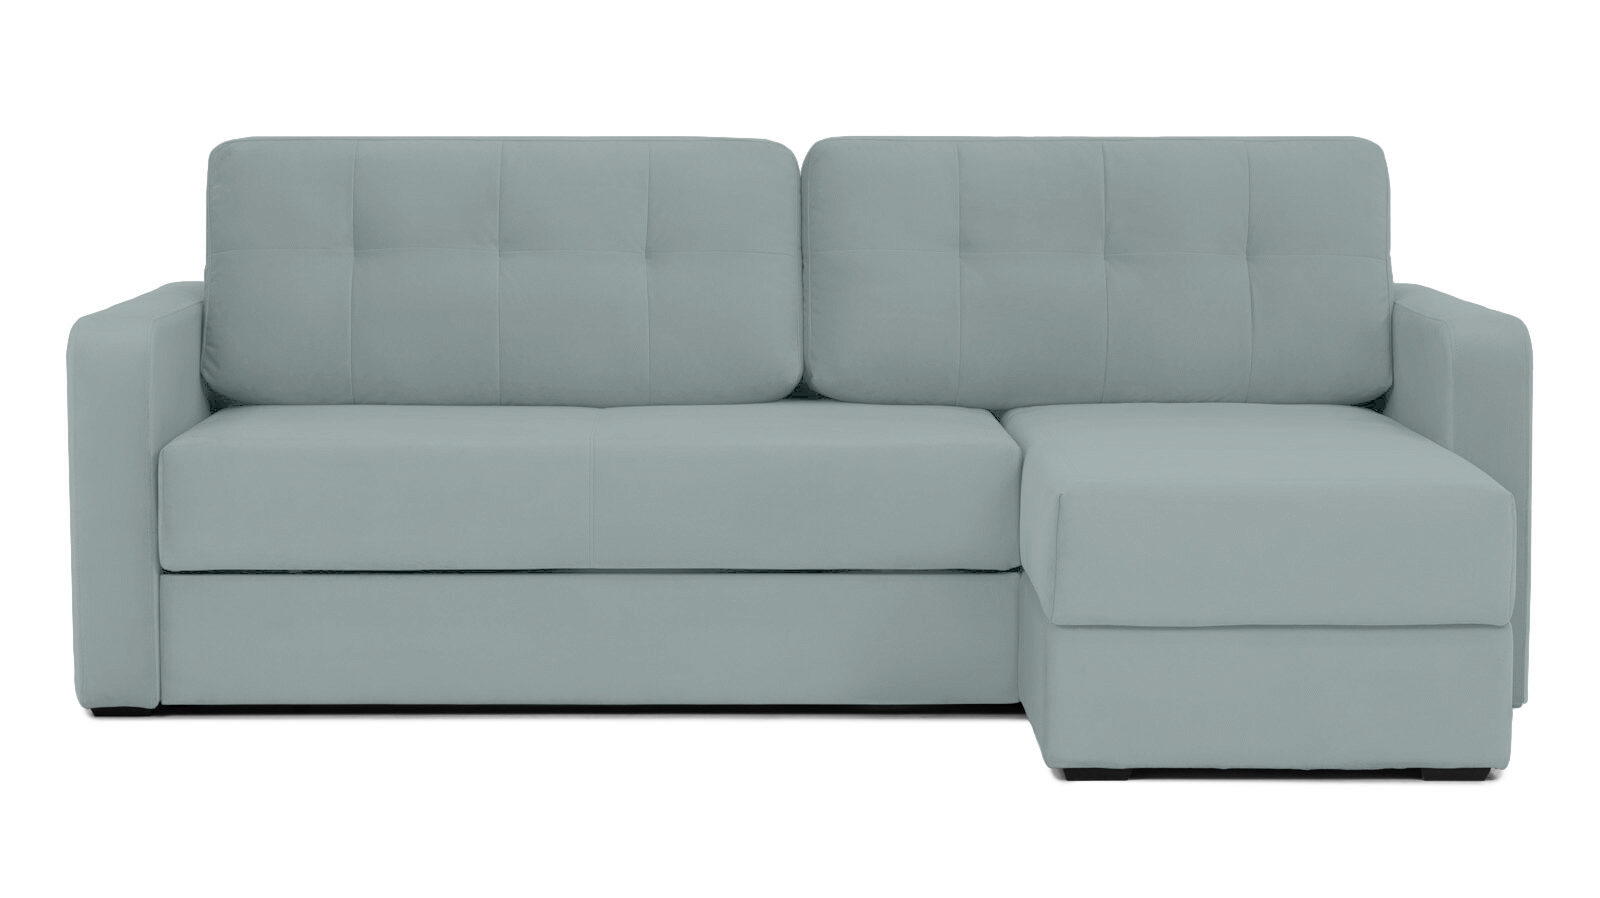 Угловой диван Loko Pro с широкими подлокотниками, с матрасом средней жесткости Askona - фото 1